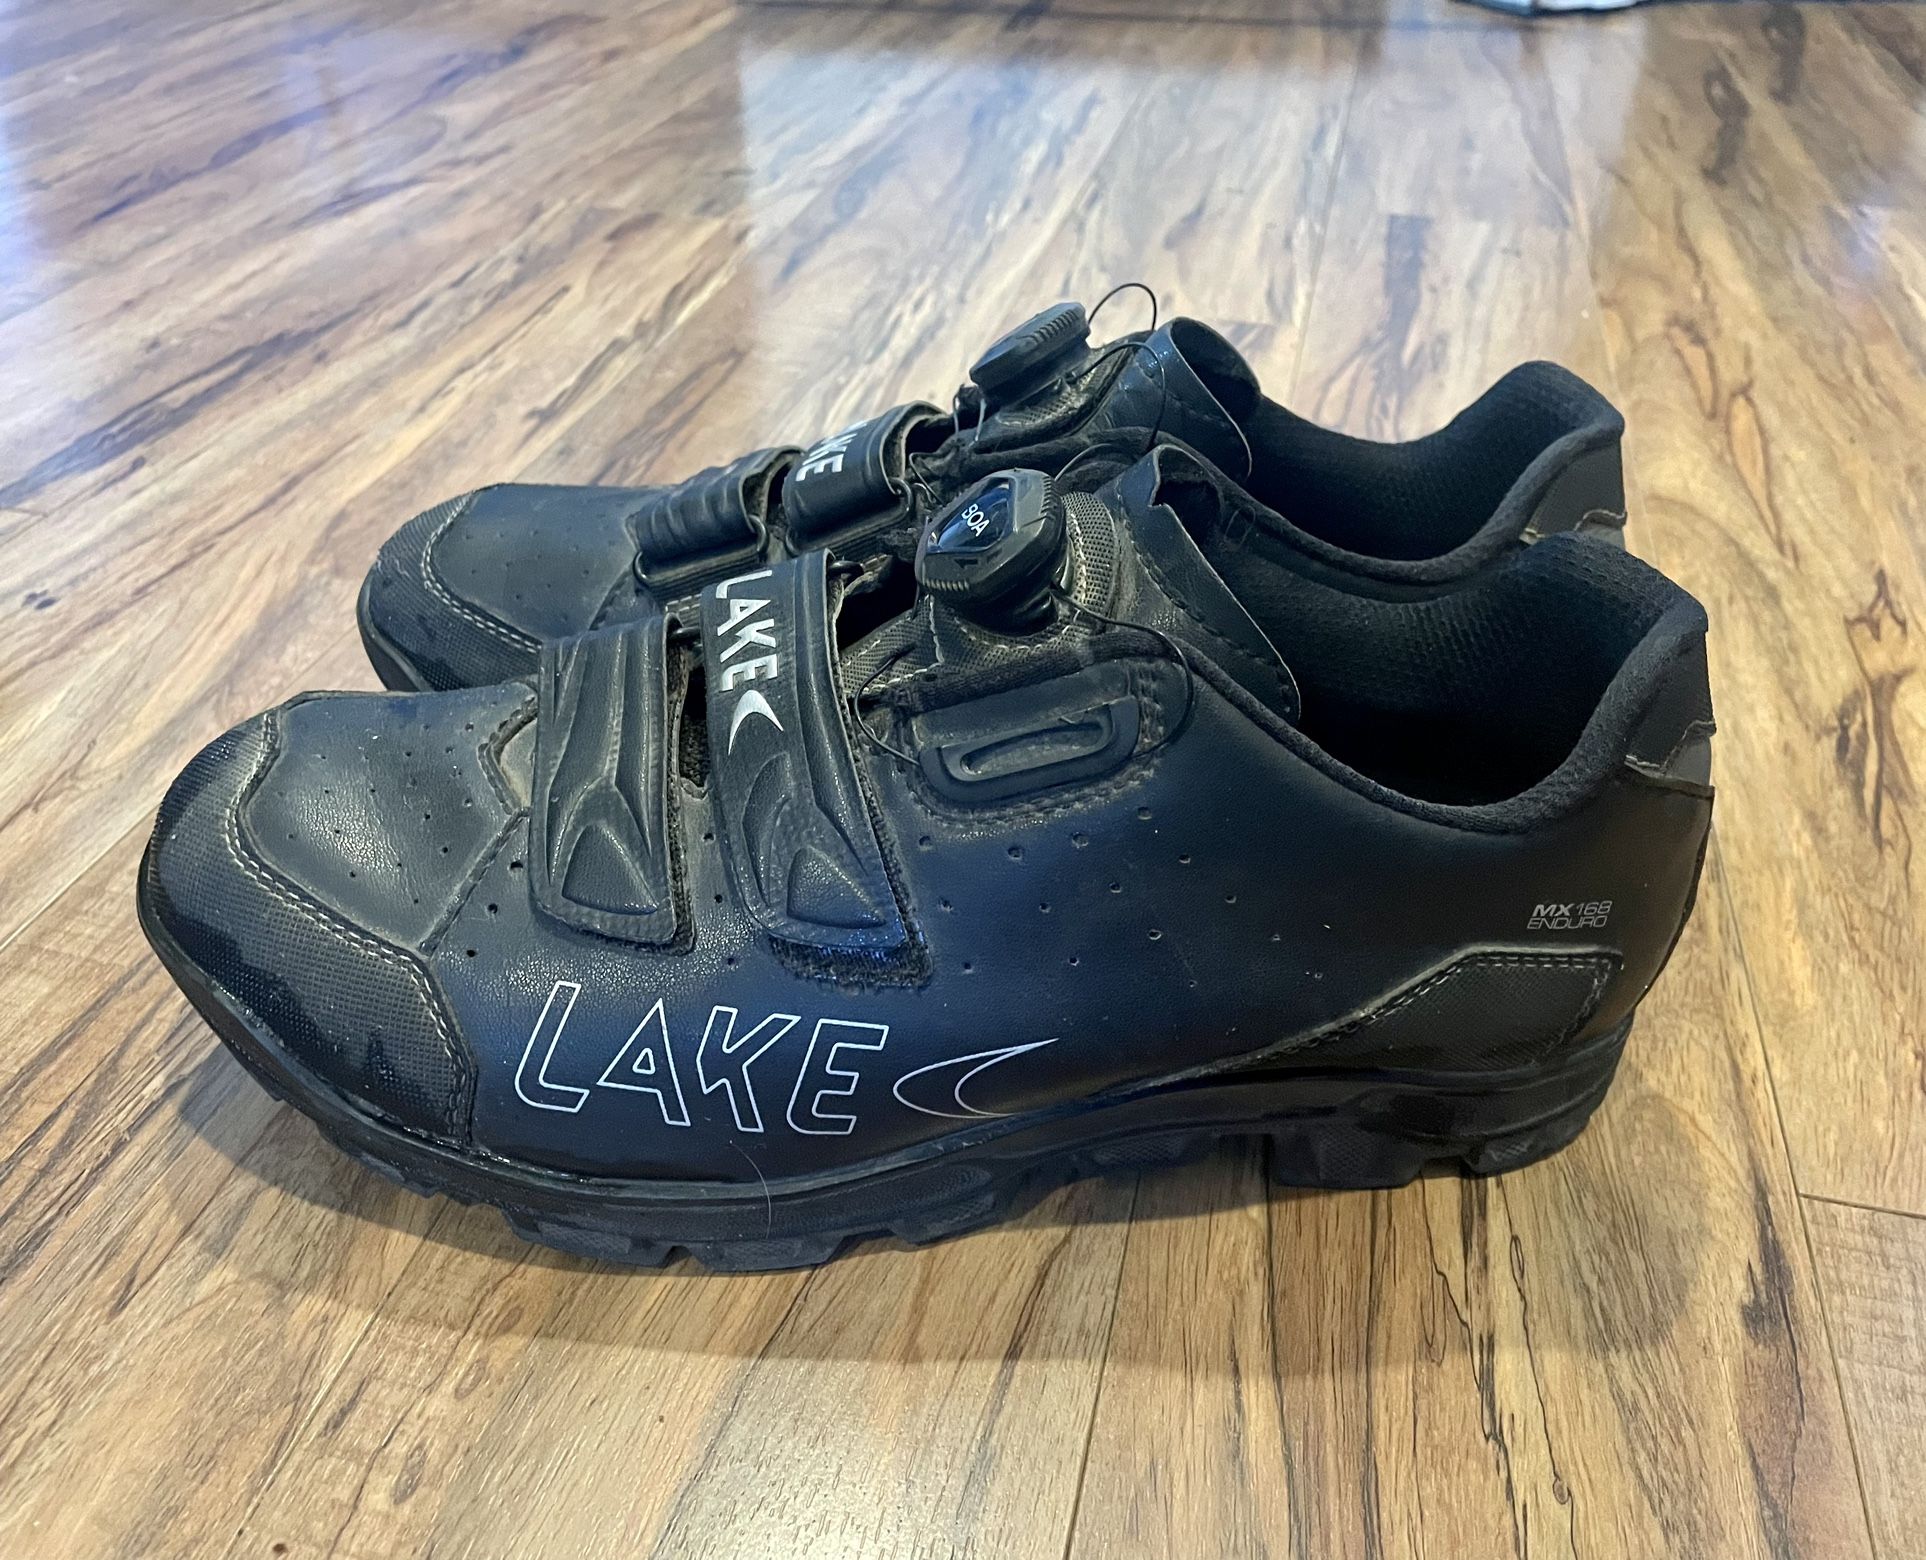 Lake MX168 Enduro Clipless Shoes 11.5